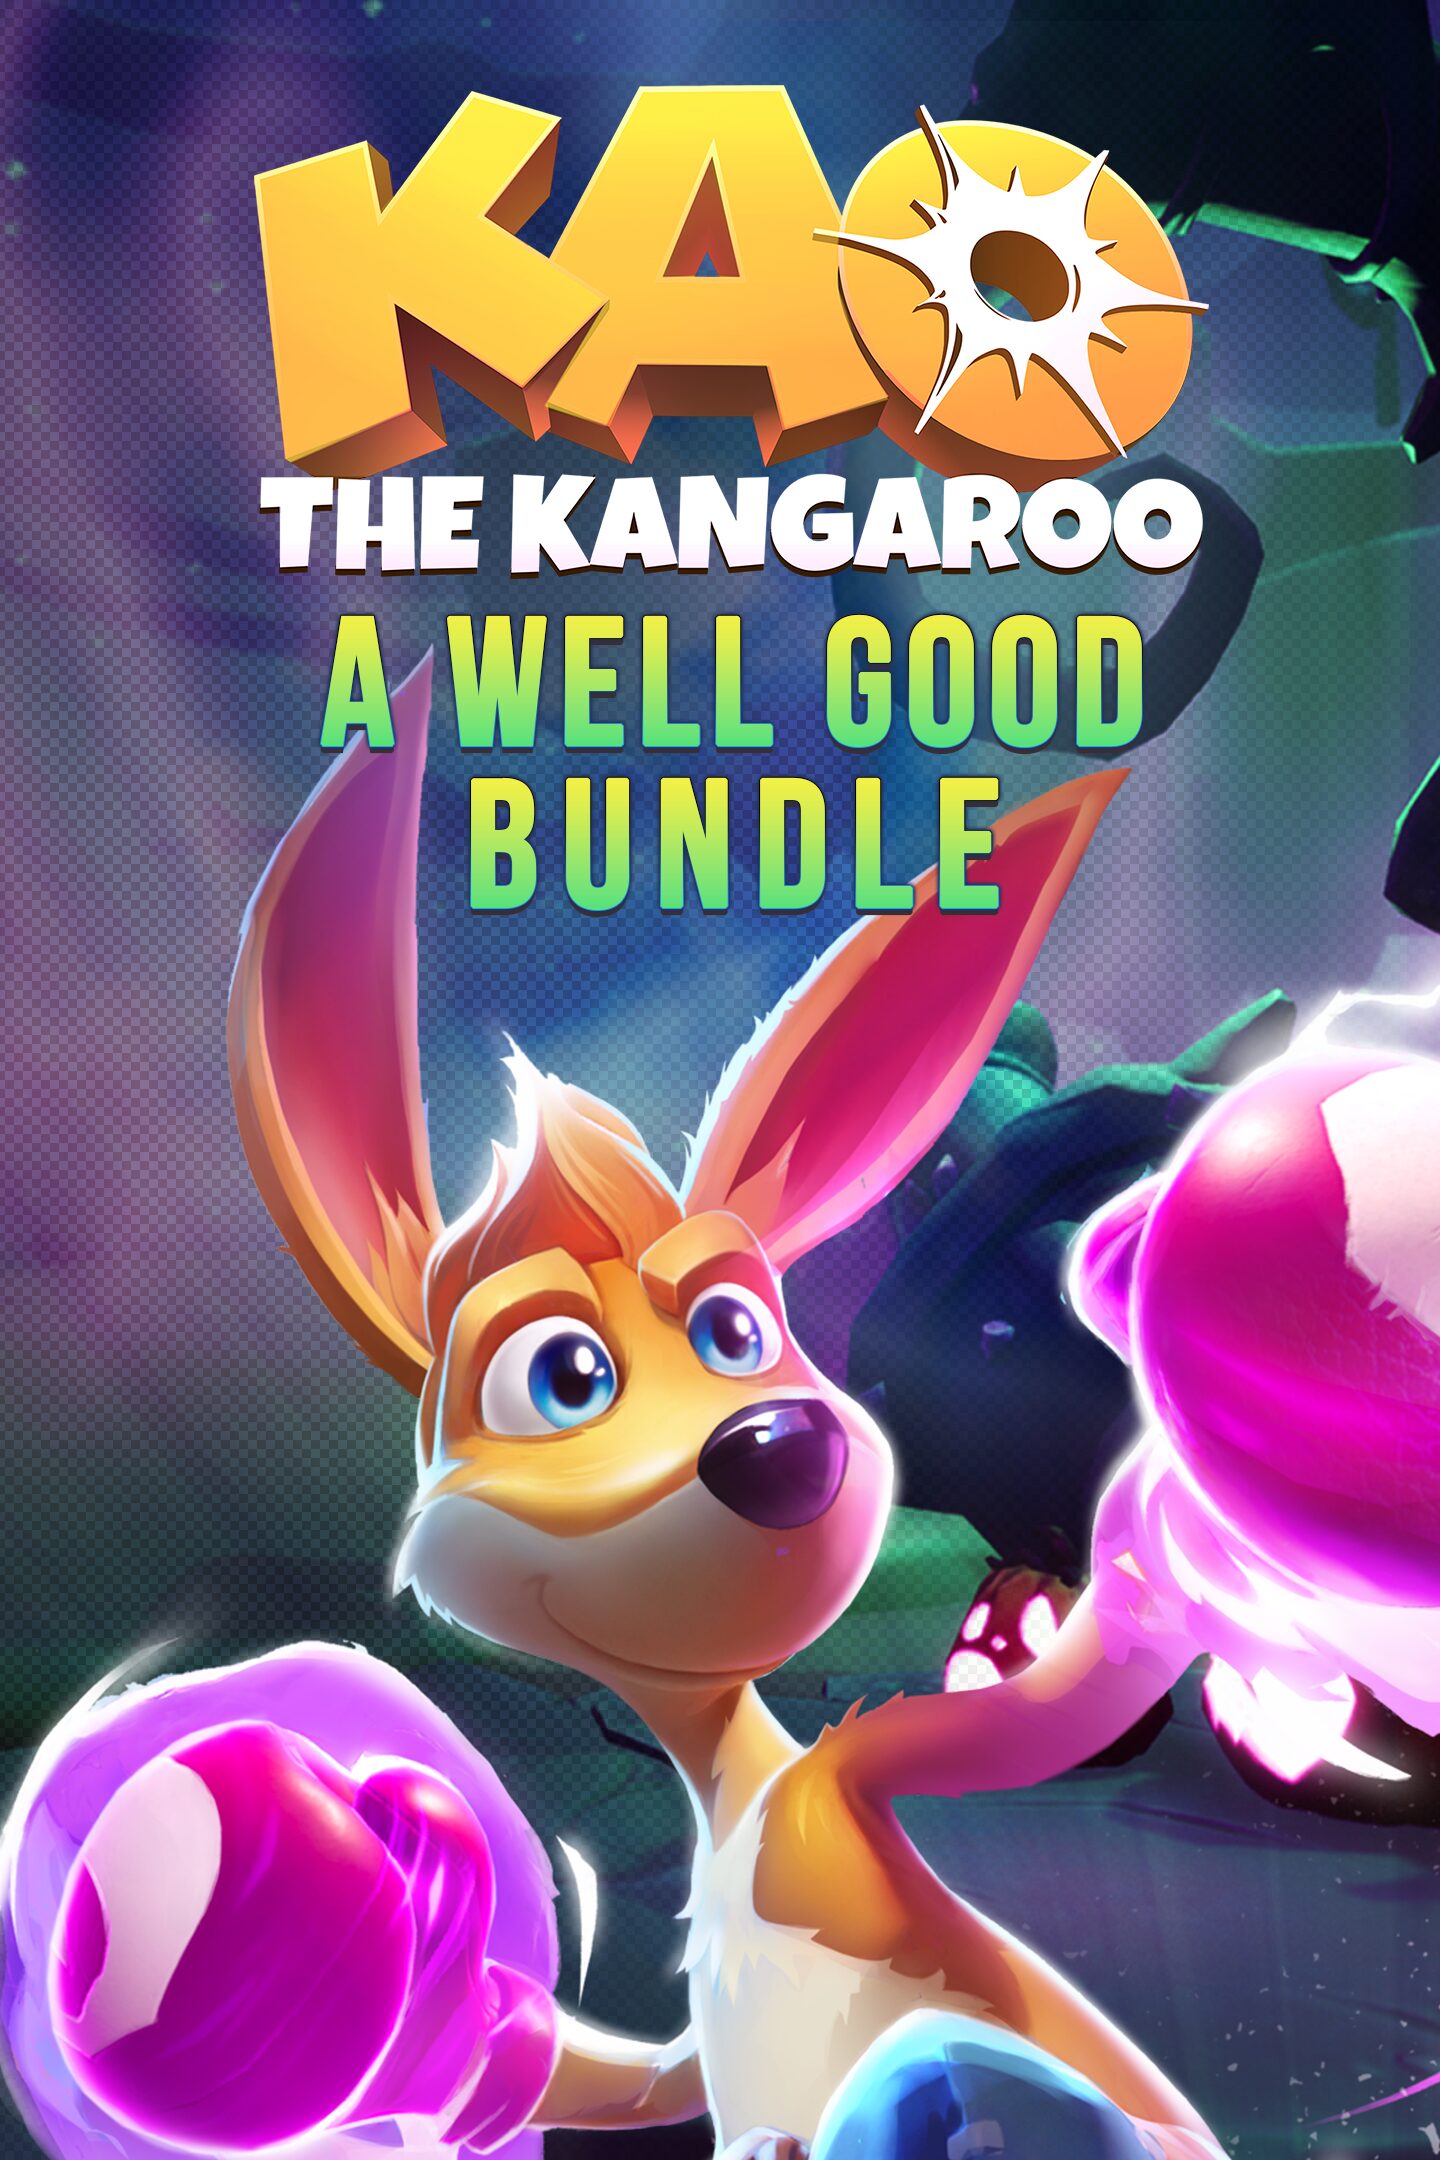 Kao the Kangaroo A Well Bundle Good